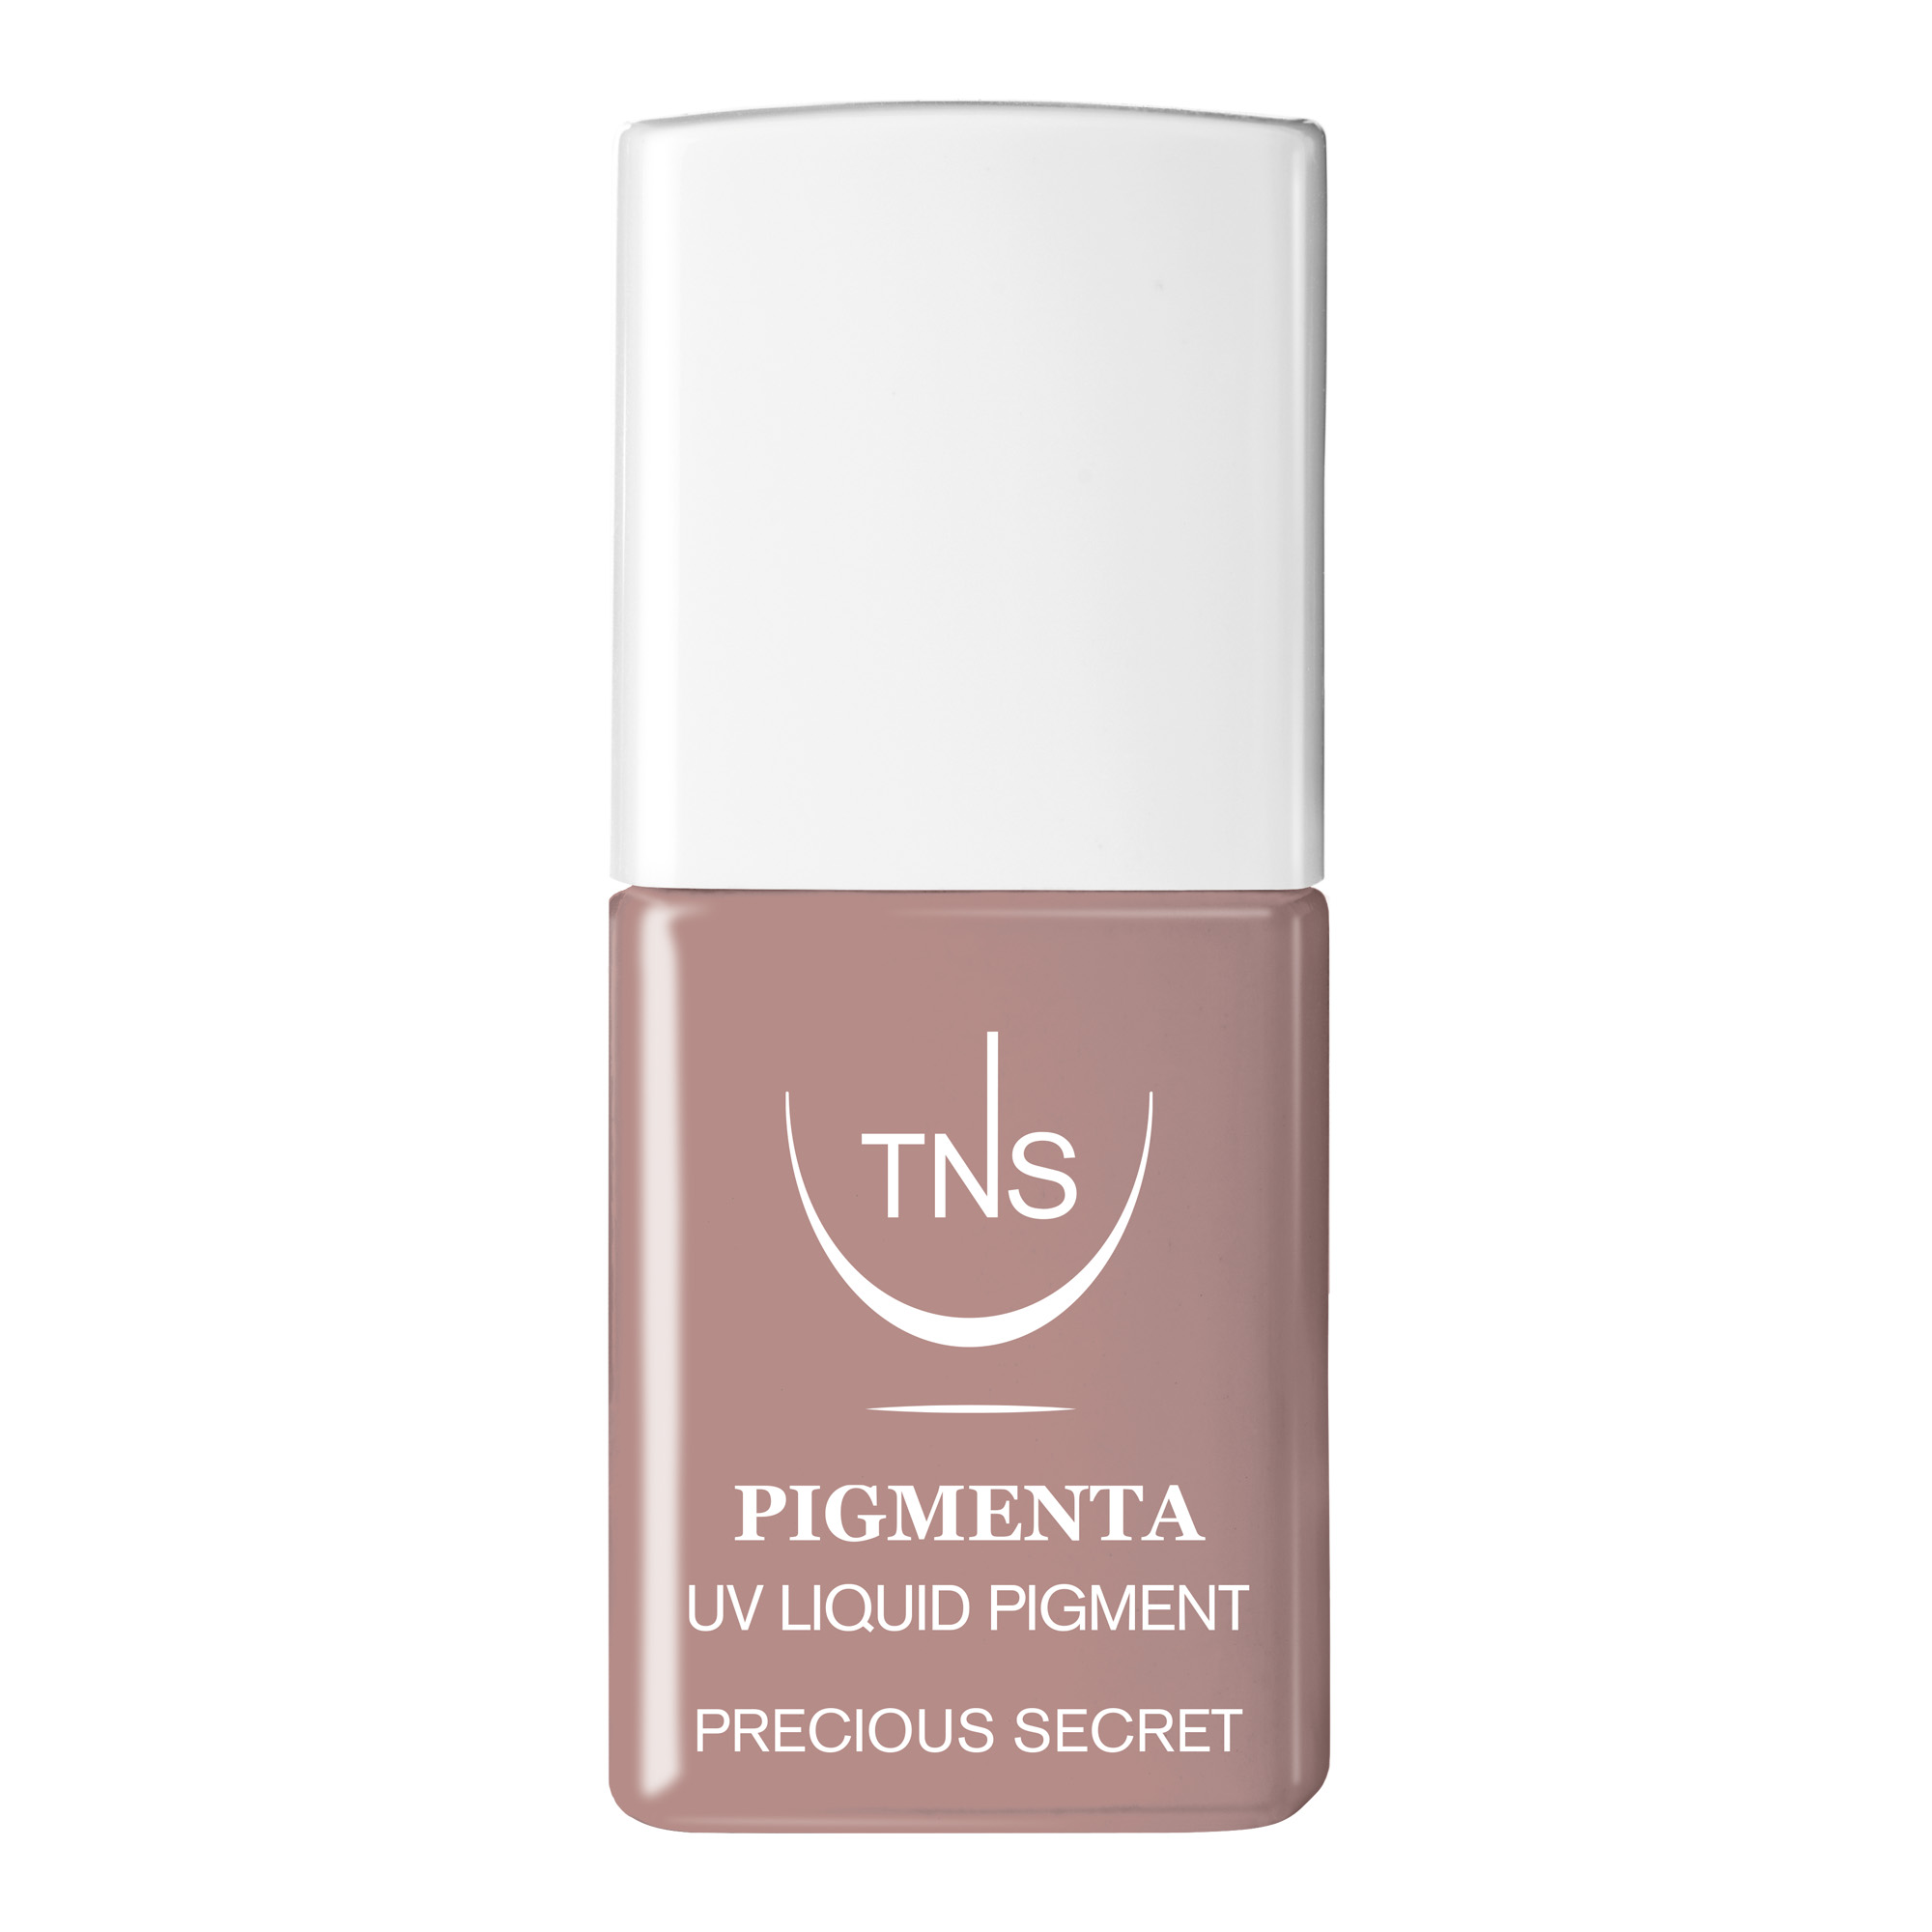 UV Liquid Pigment Precious Secret pink nude 10 ml Pigmenta TNS